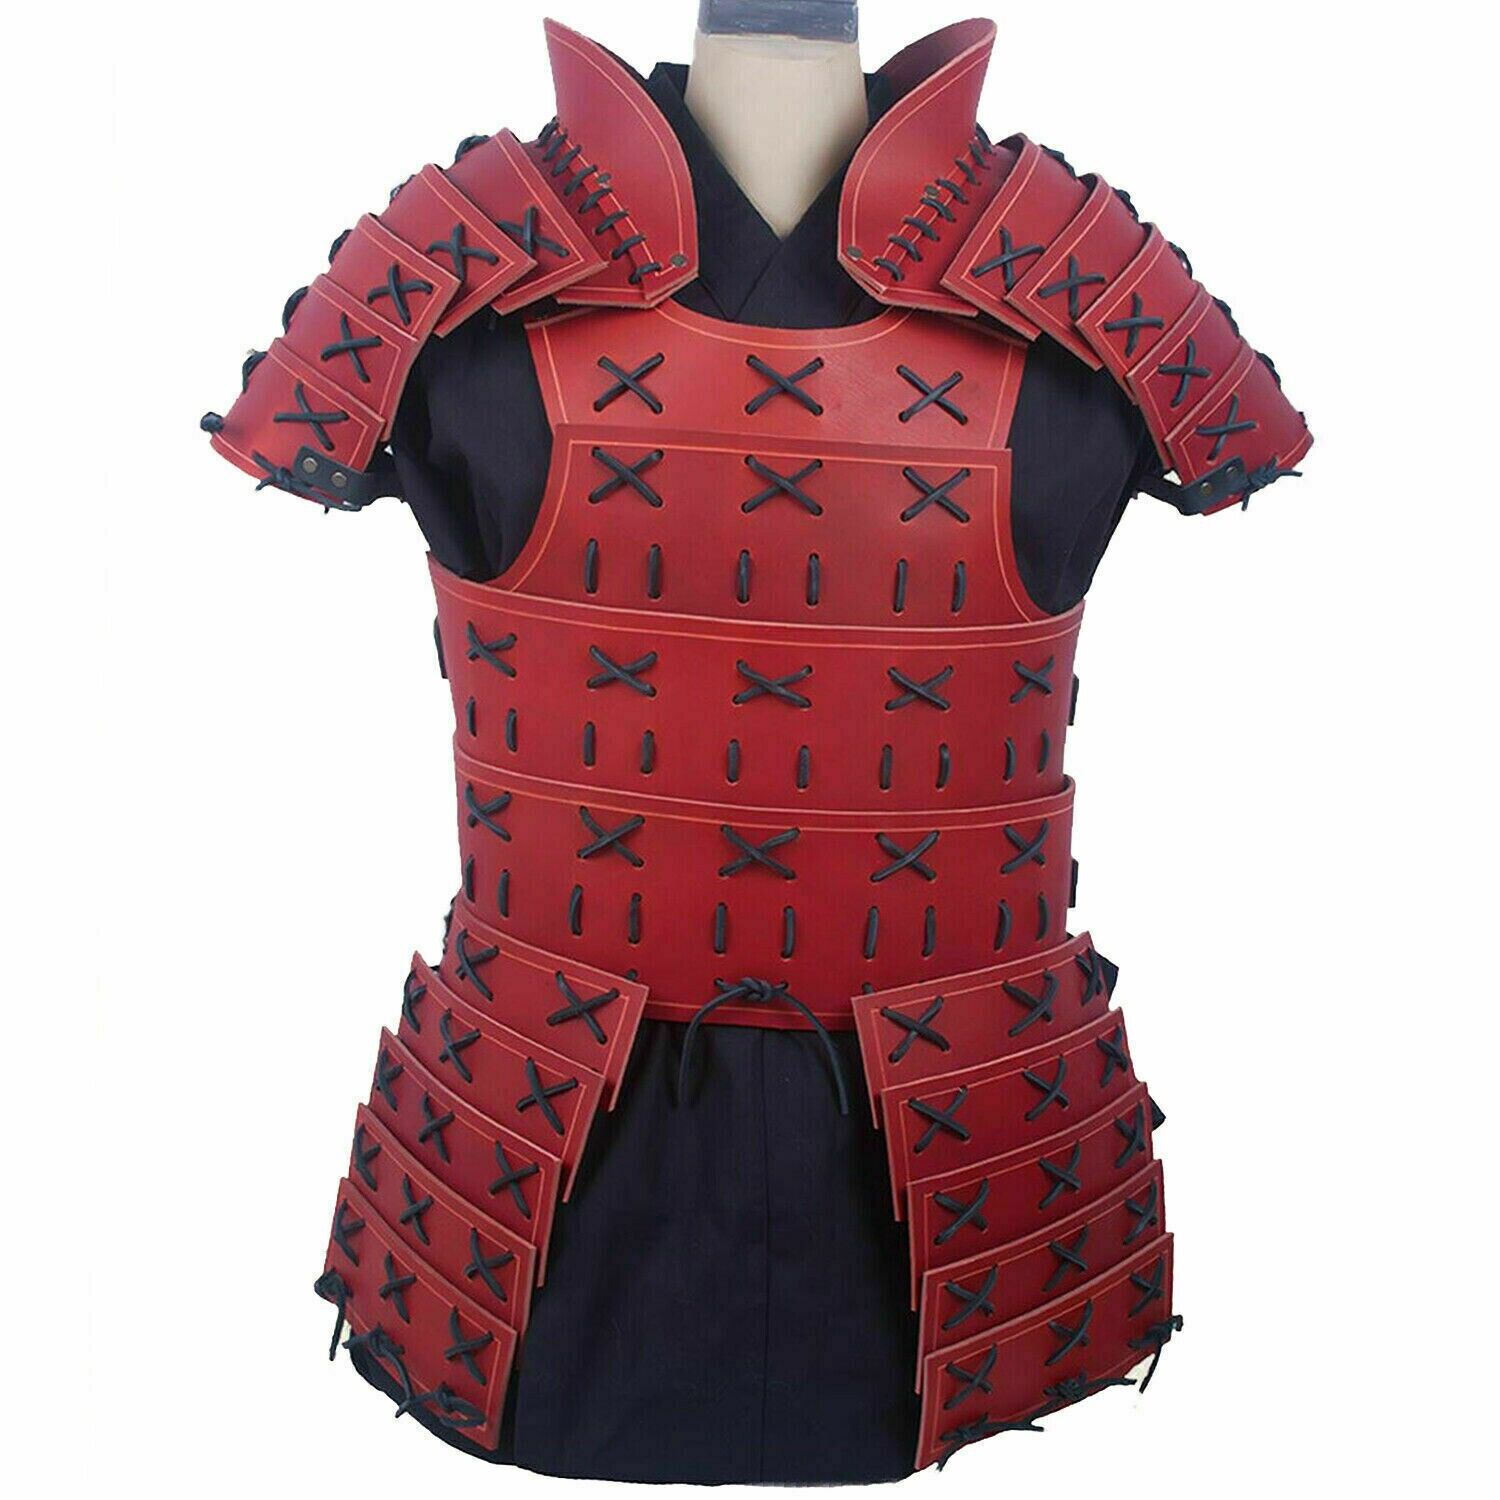 Red Samurai Leather Armor LARP Costume Medieval Leather Armor By Medieval Knight